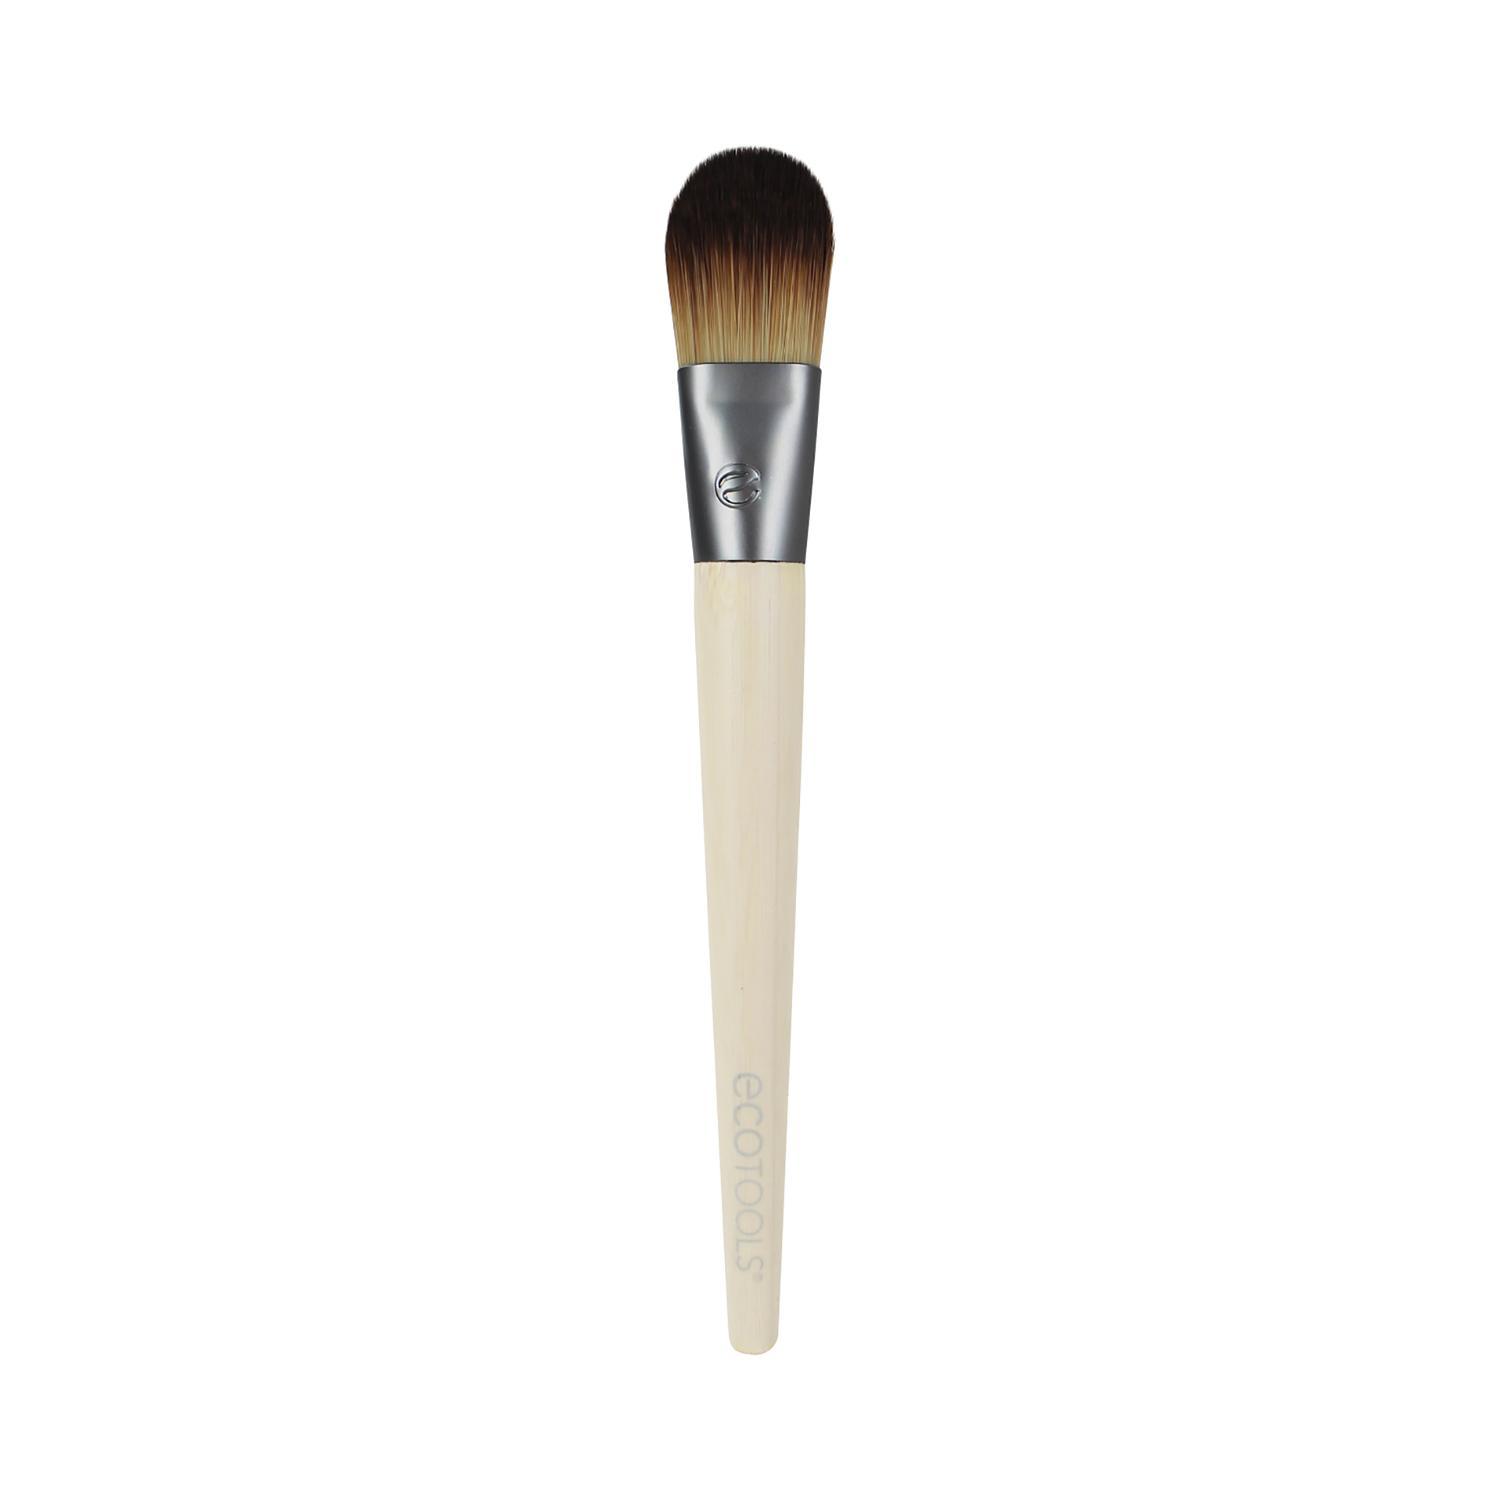 ecotools flat foundation makeup brush - beige (1 pc)